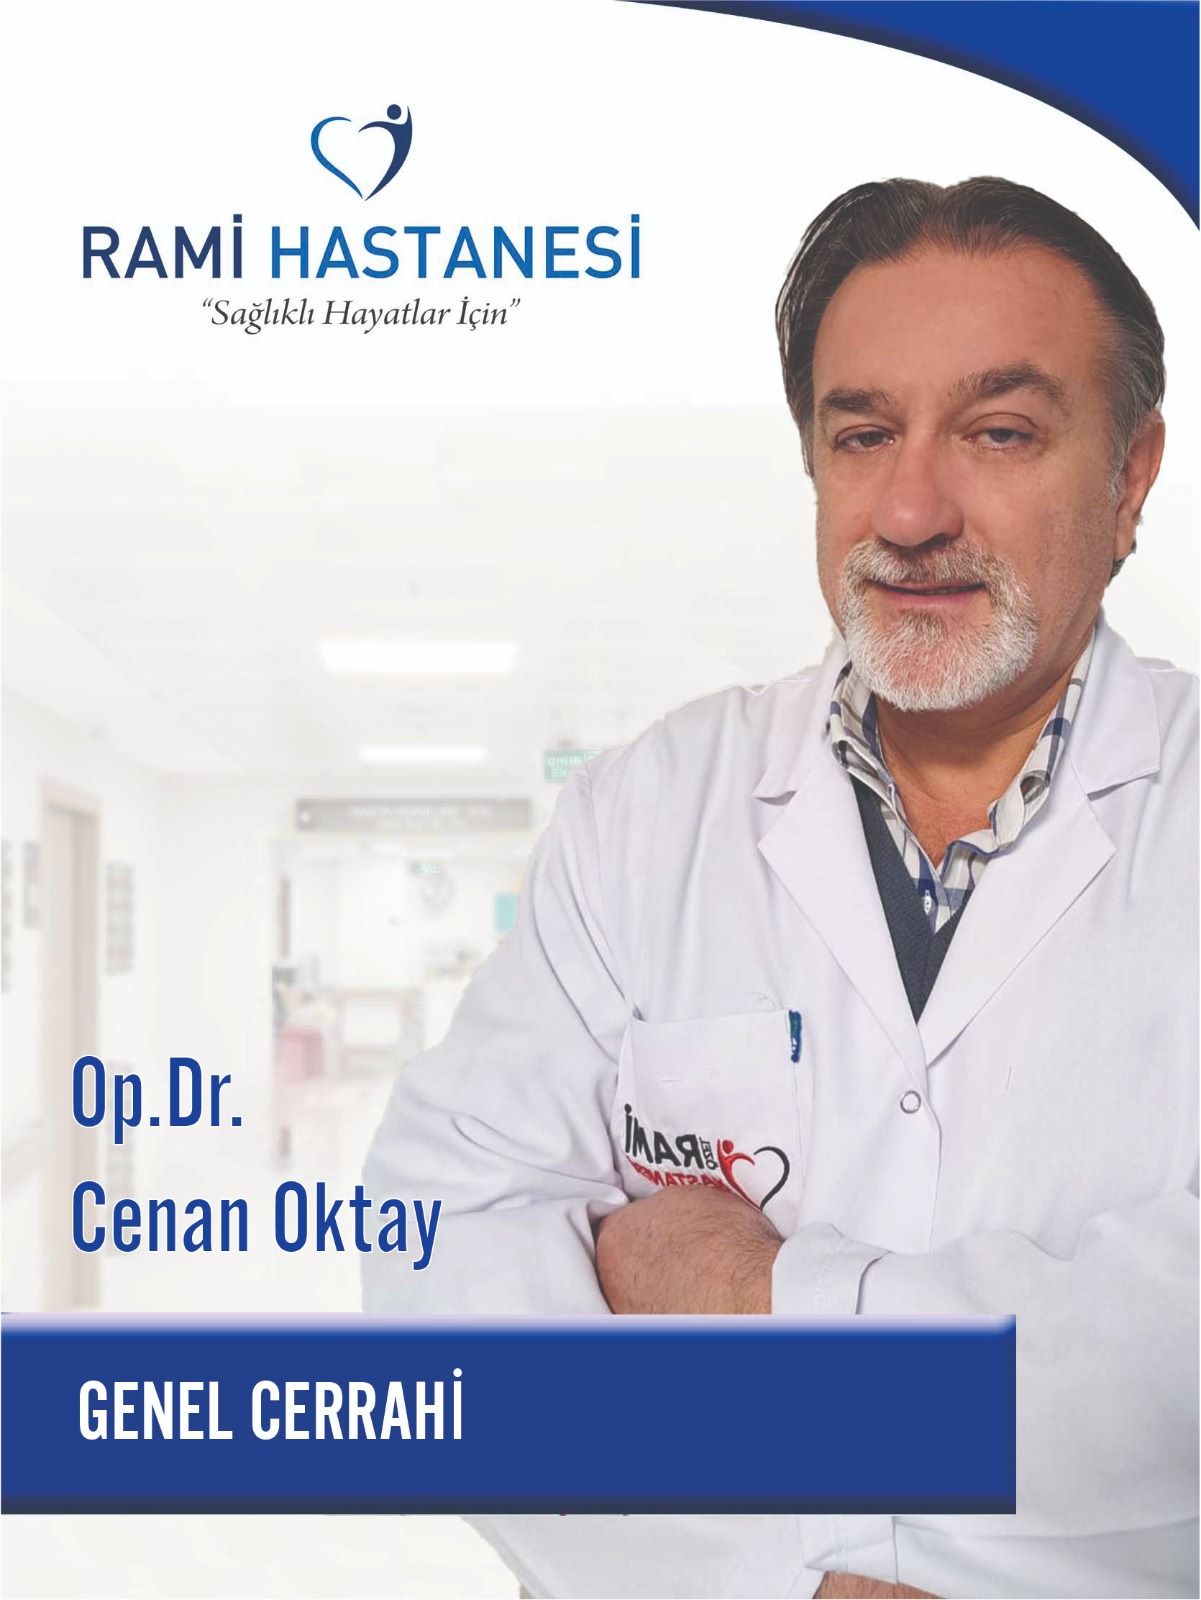 أخصائي جراحة عامة Cenan OKTAY